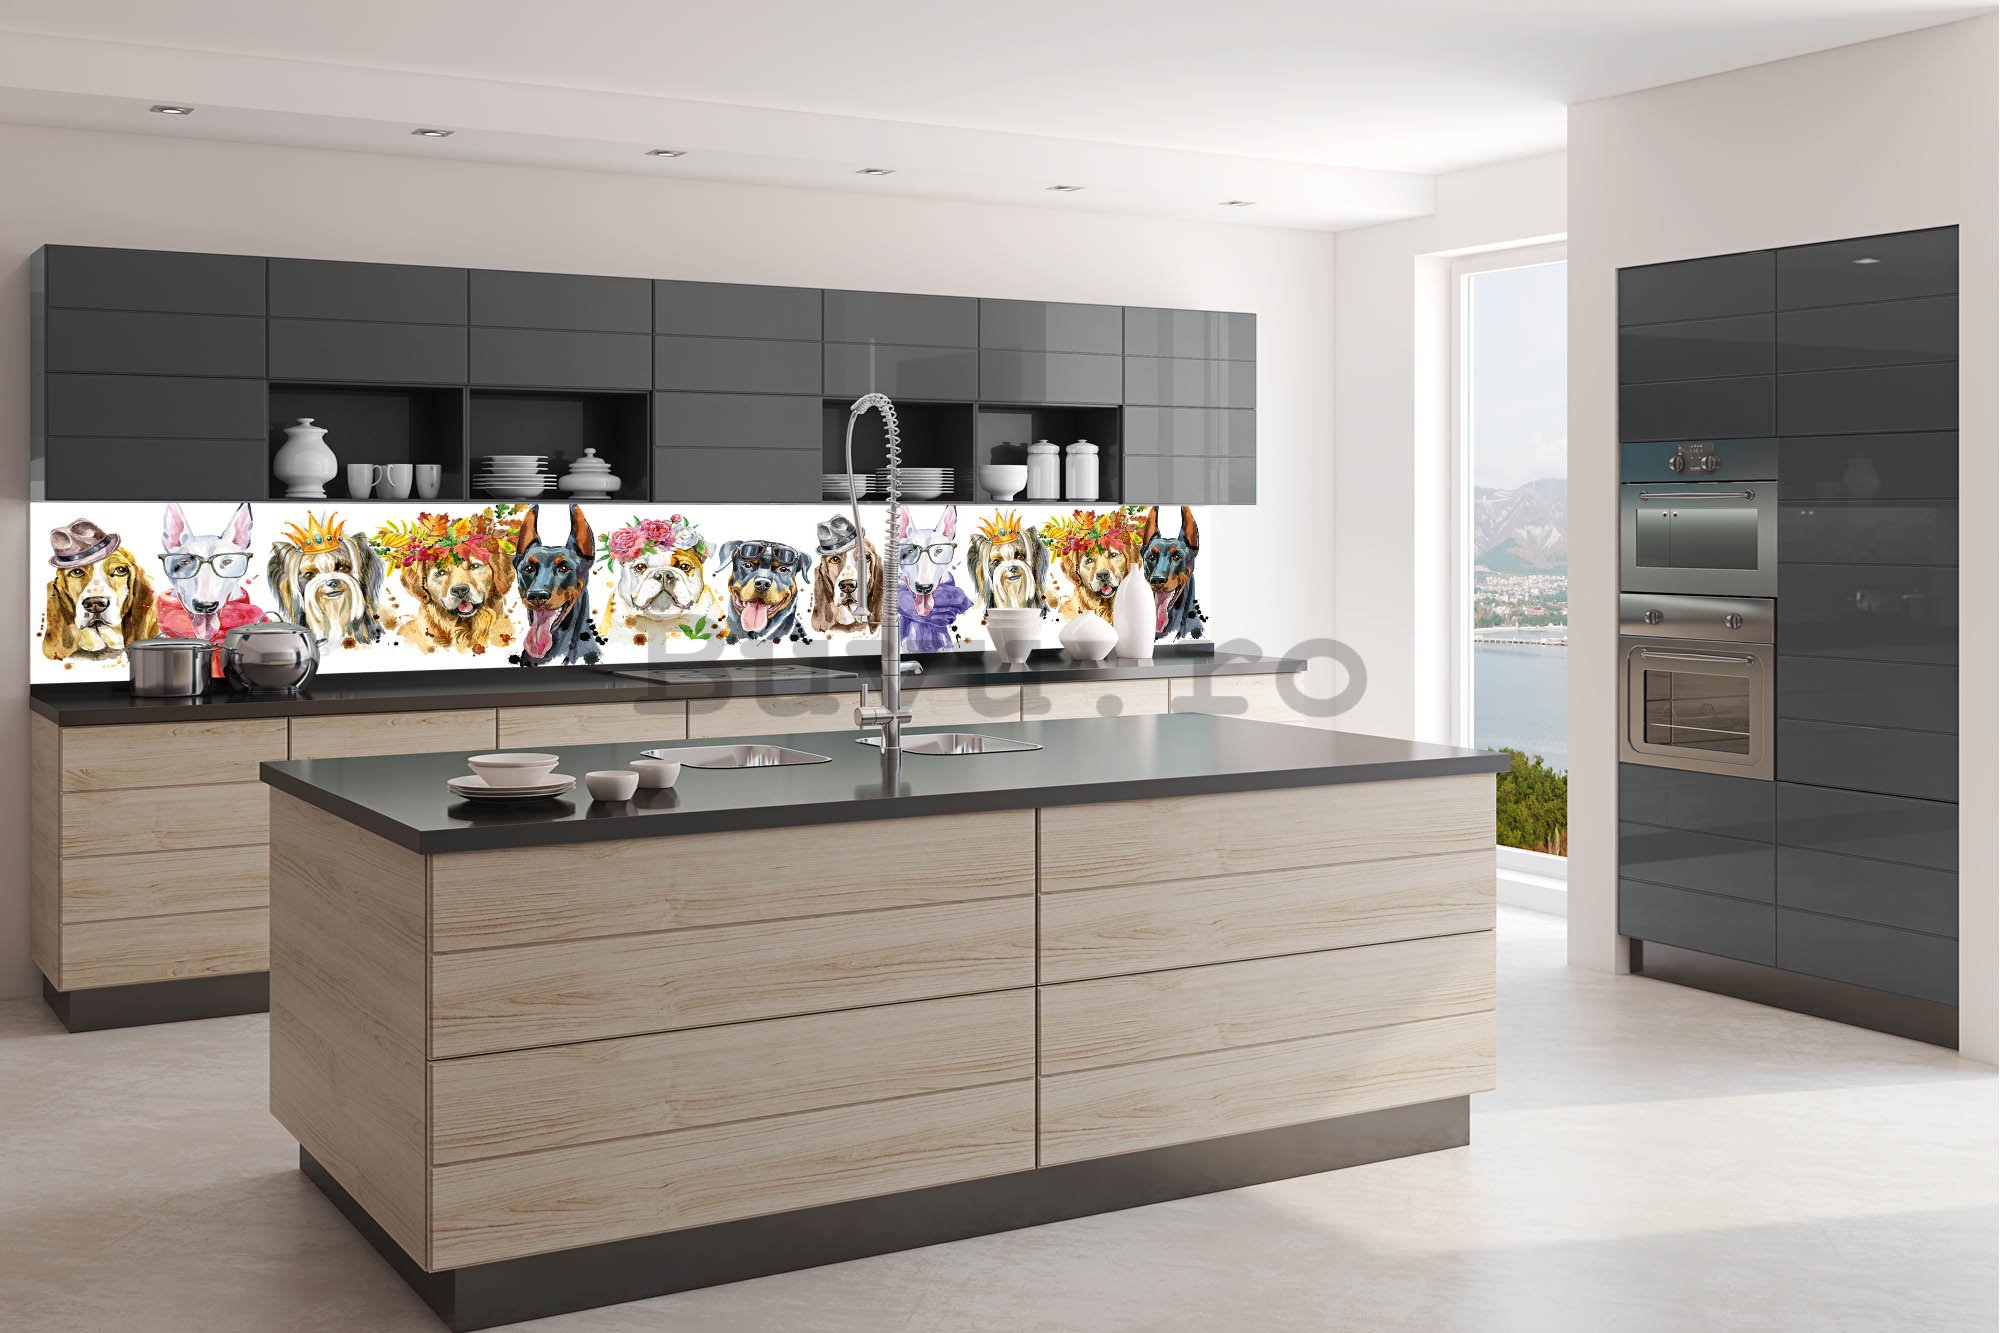 Tapet autoadeziv lavabil pentru bucătărie - Portrete de câini, 350x60 cm